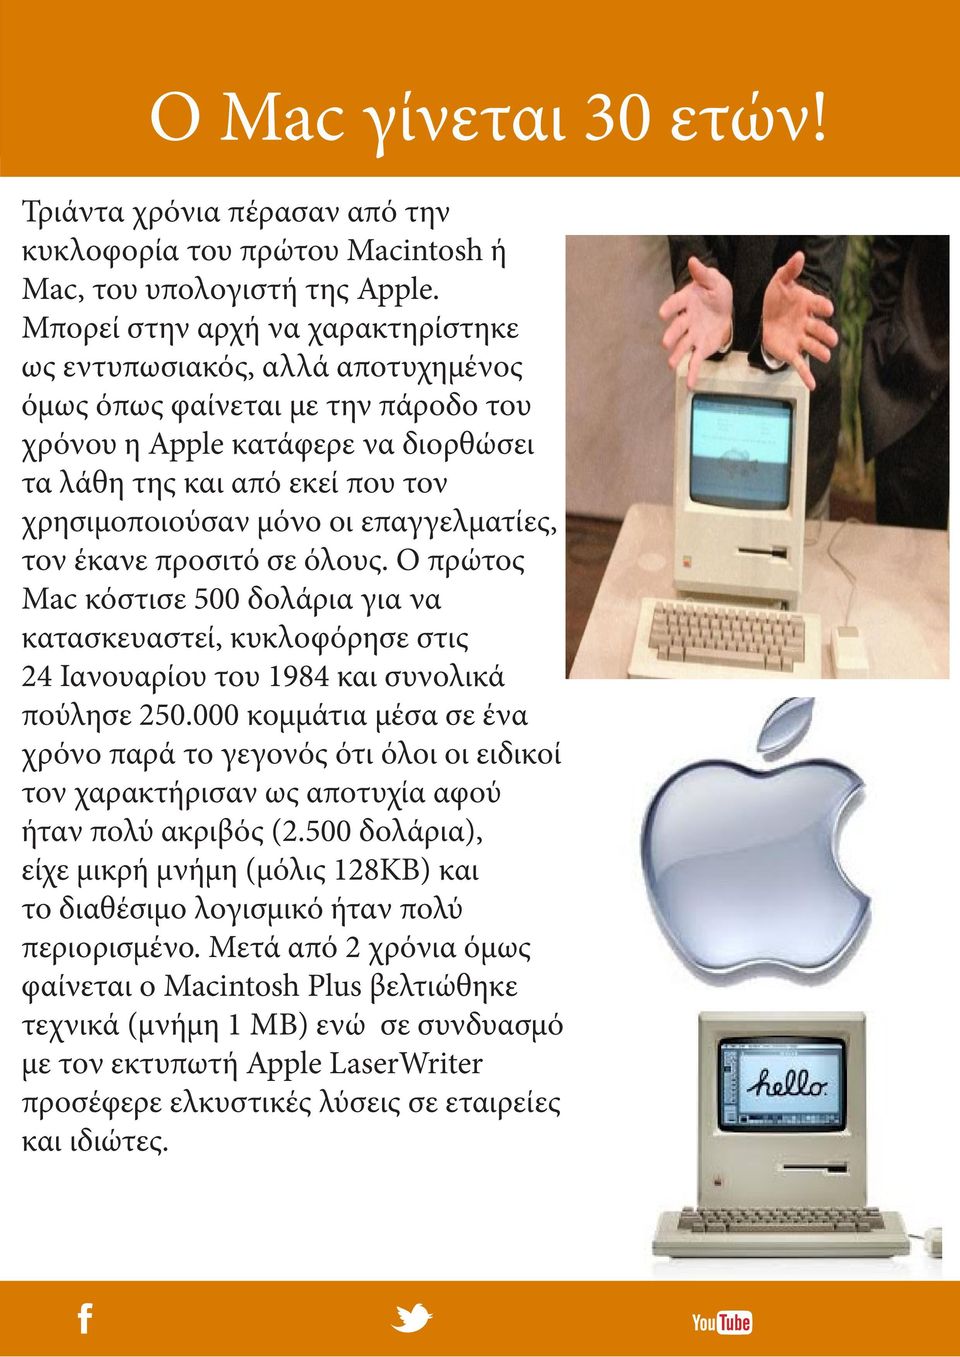 οι επαγγελματίες, τον έκανε προσιτό σε όλους. O πρώτος Mac κόστισε 500 δολάρια για να κατασκευαστεί, κυκλοφόρησε στις 24 Ιανουαρίου του 1984 και συνολικά πούλησε 250.